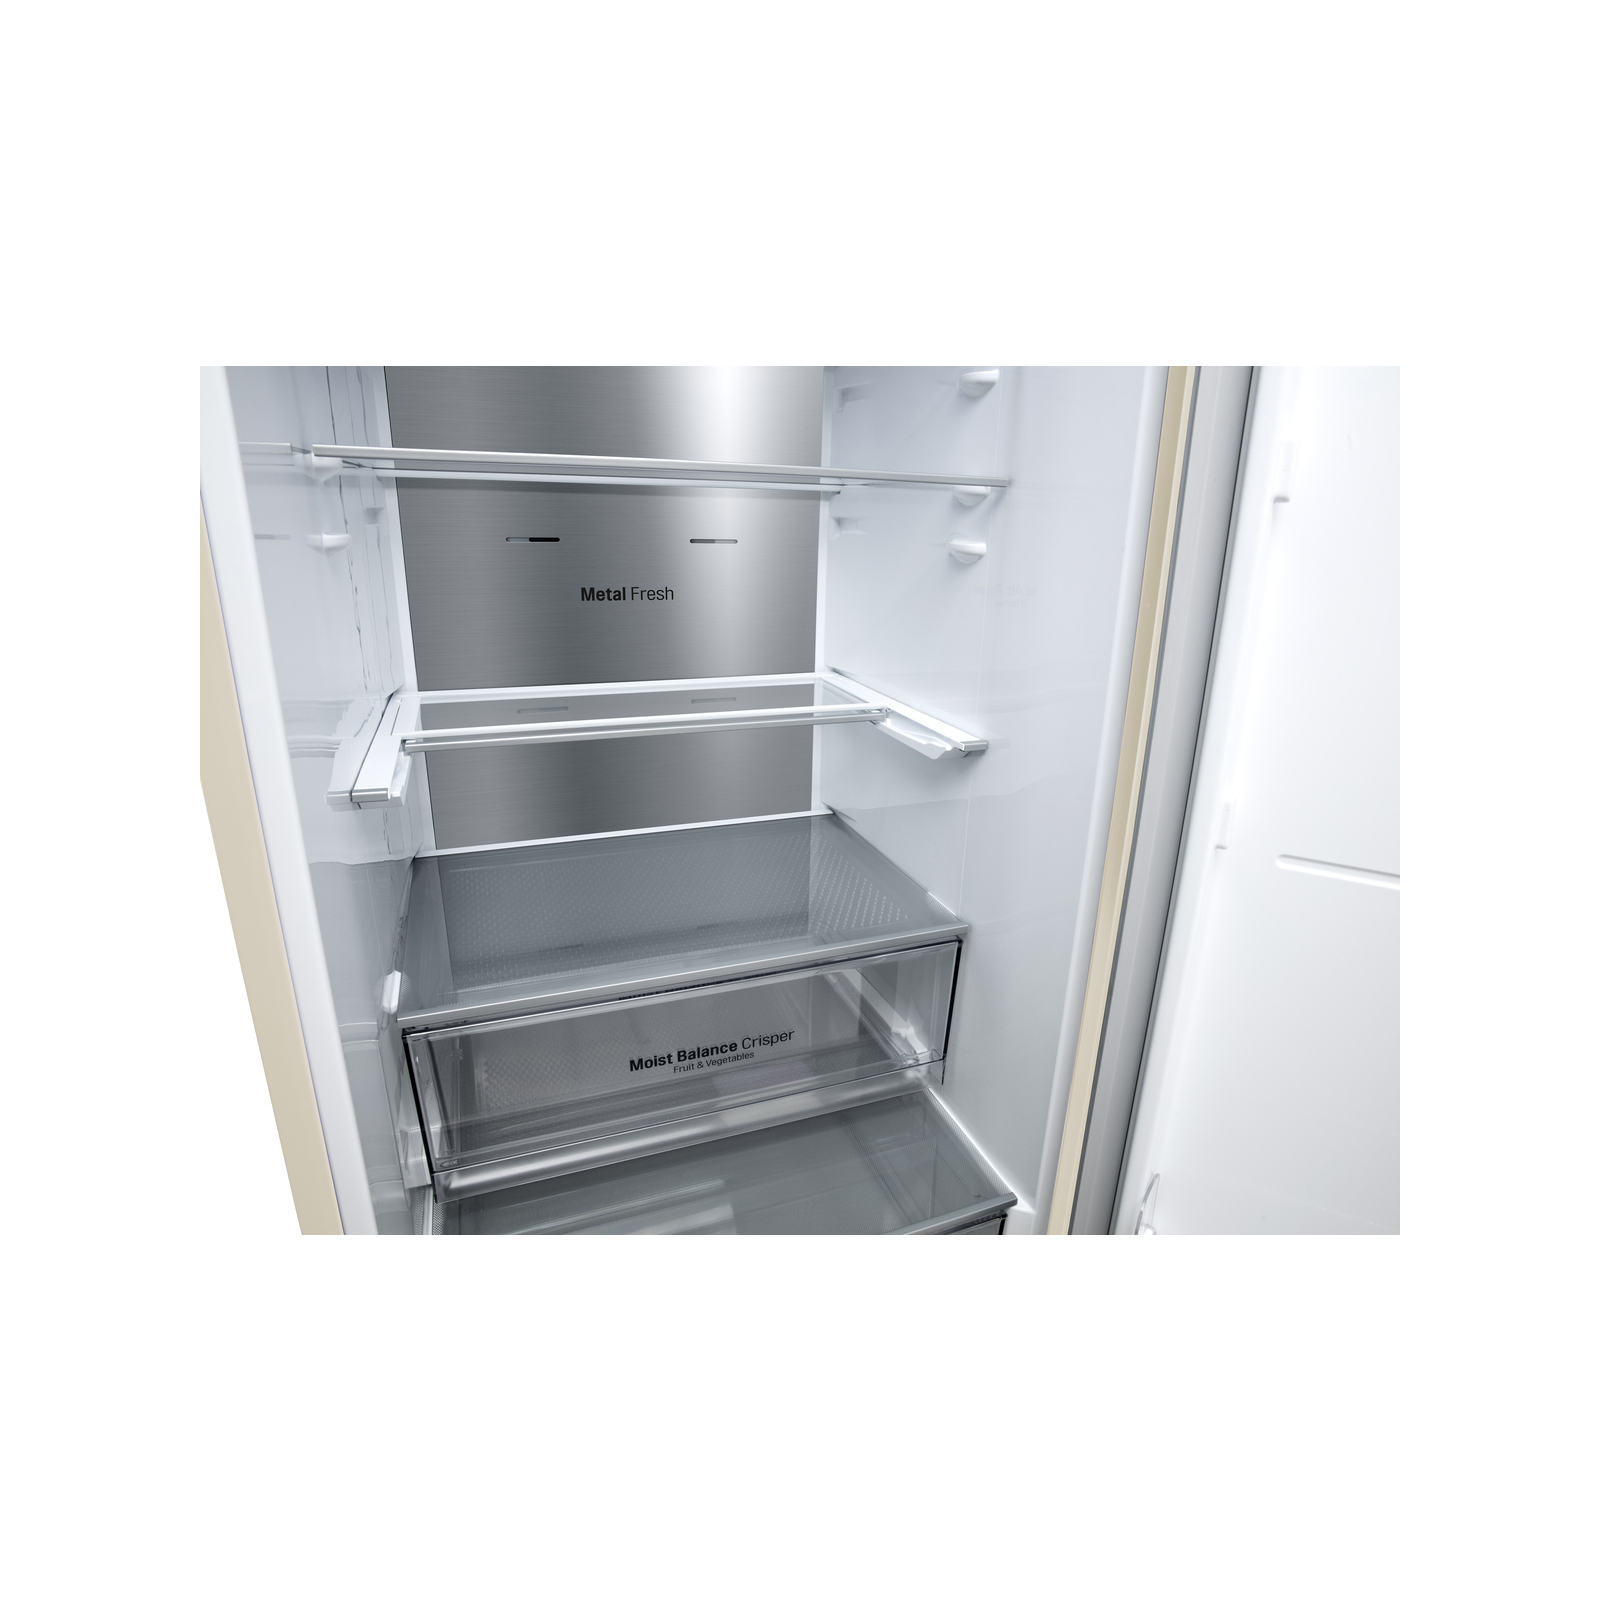 Холодильник LG GC-B509SESM изображение 10